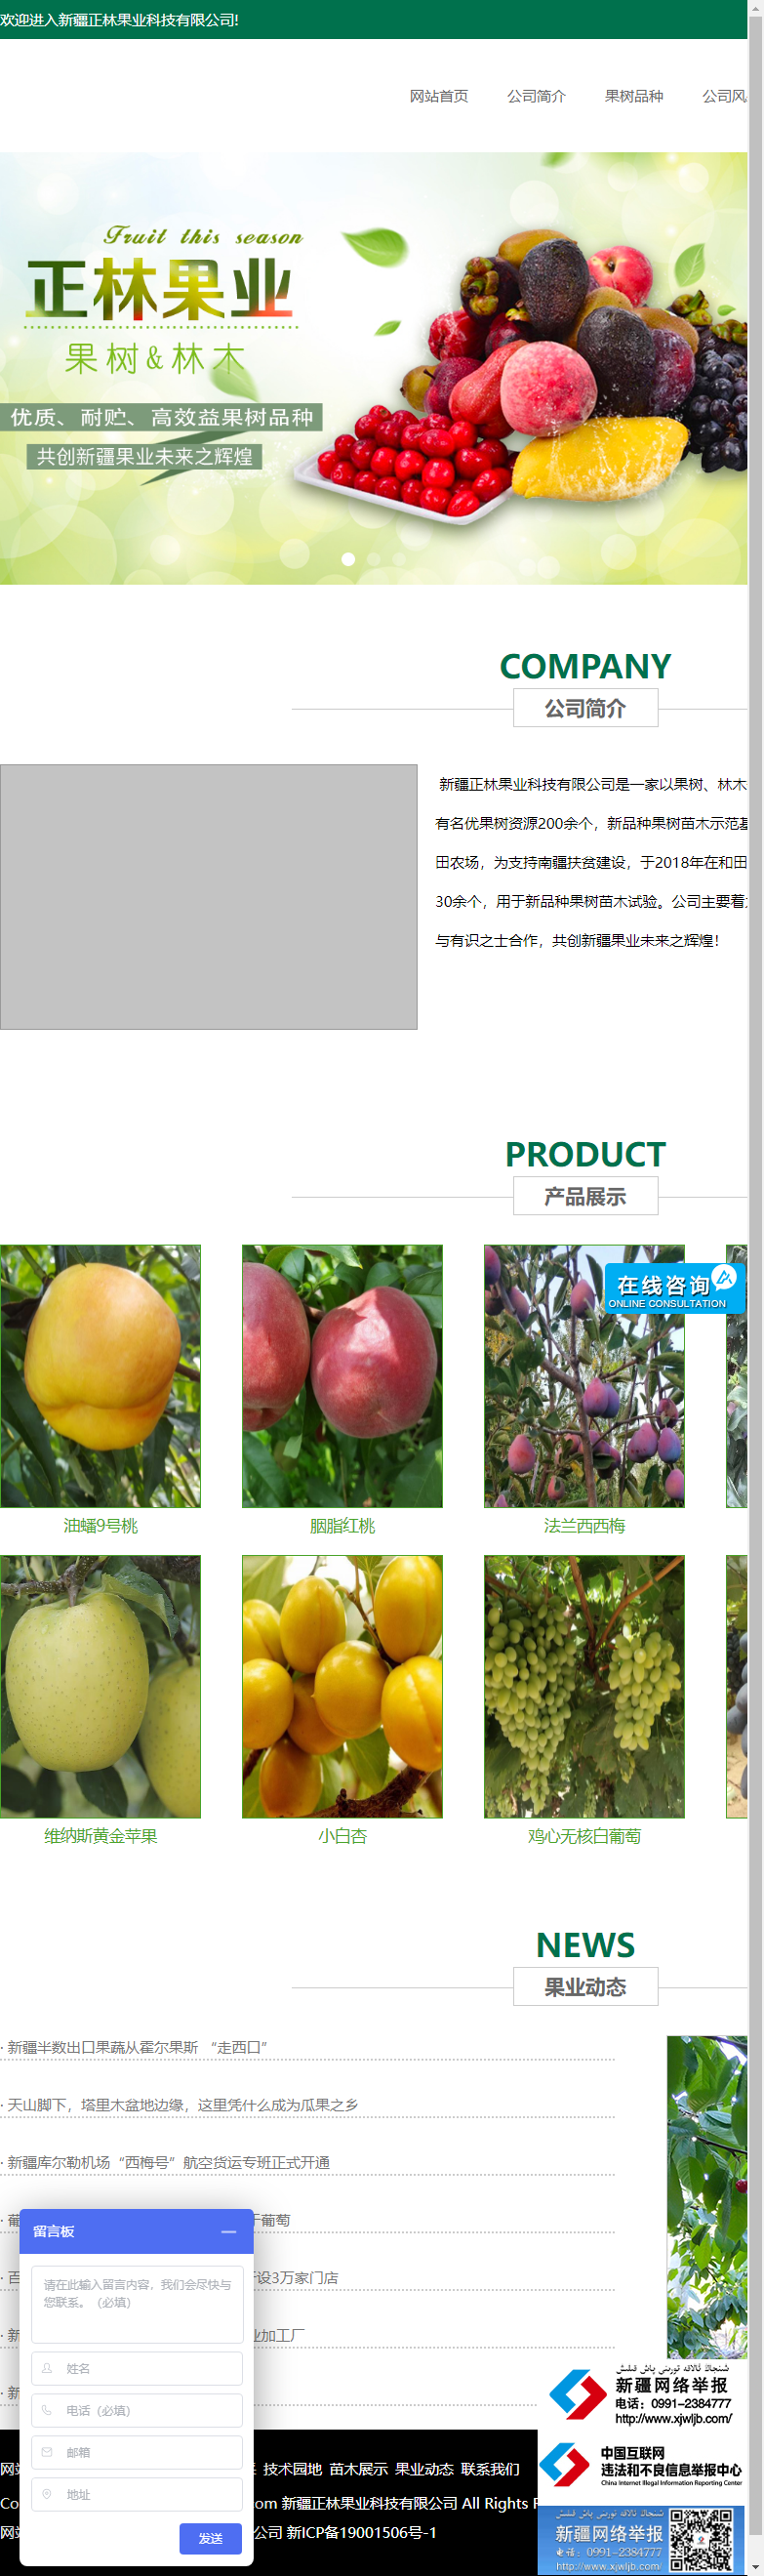 新疆正林果业科技有限公司网站案例